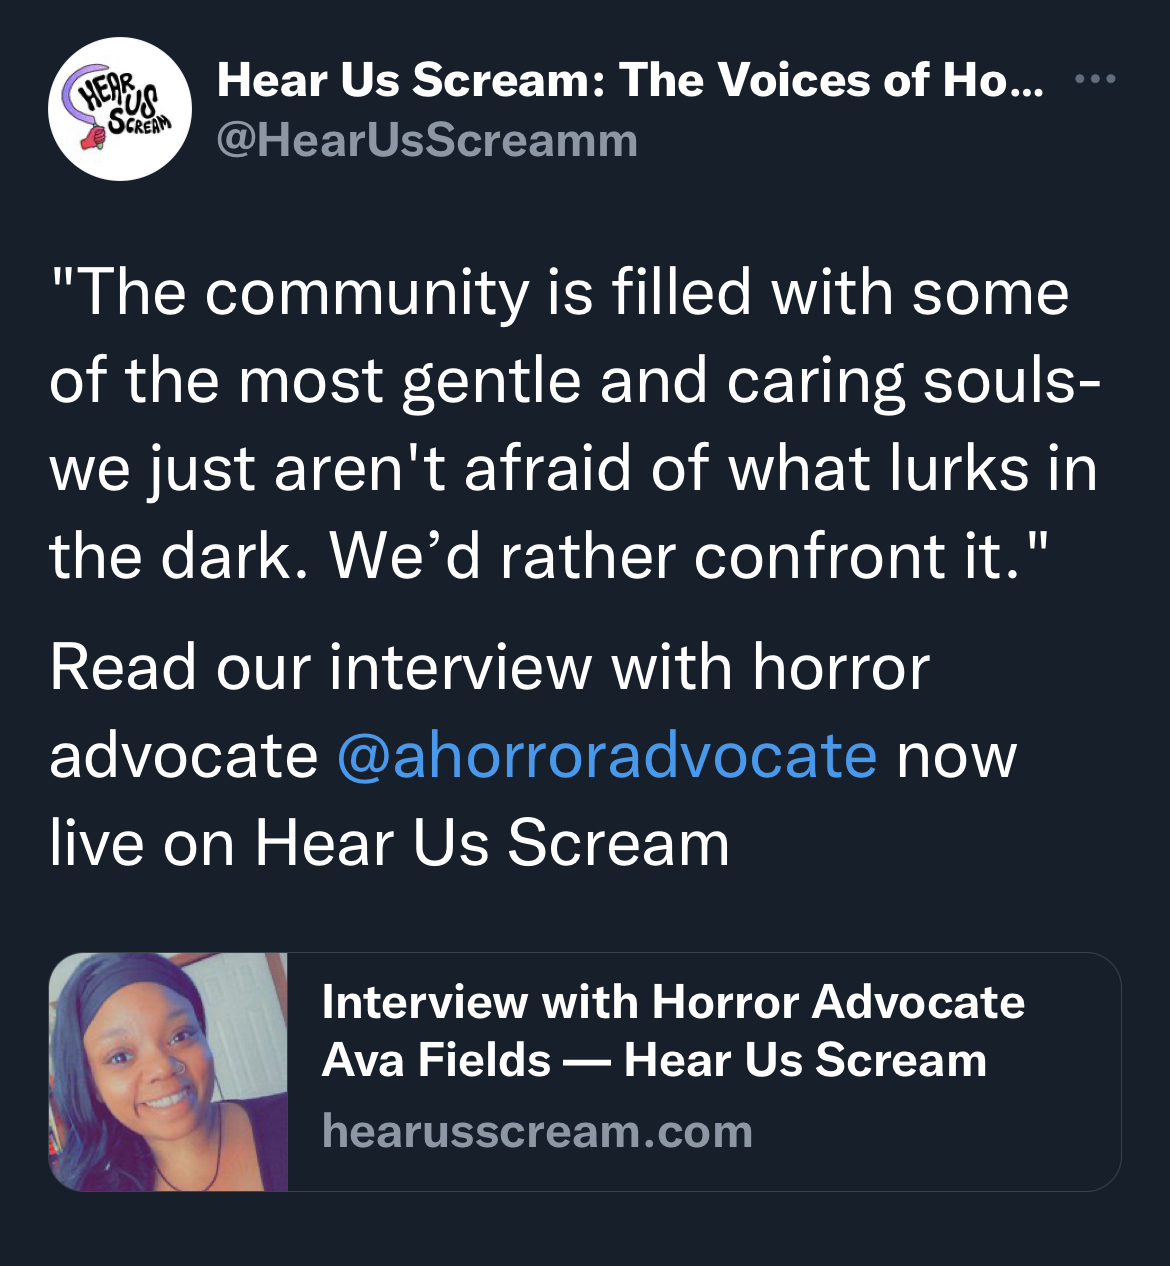 HEAR US SCREAM INTERVIEW